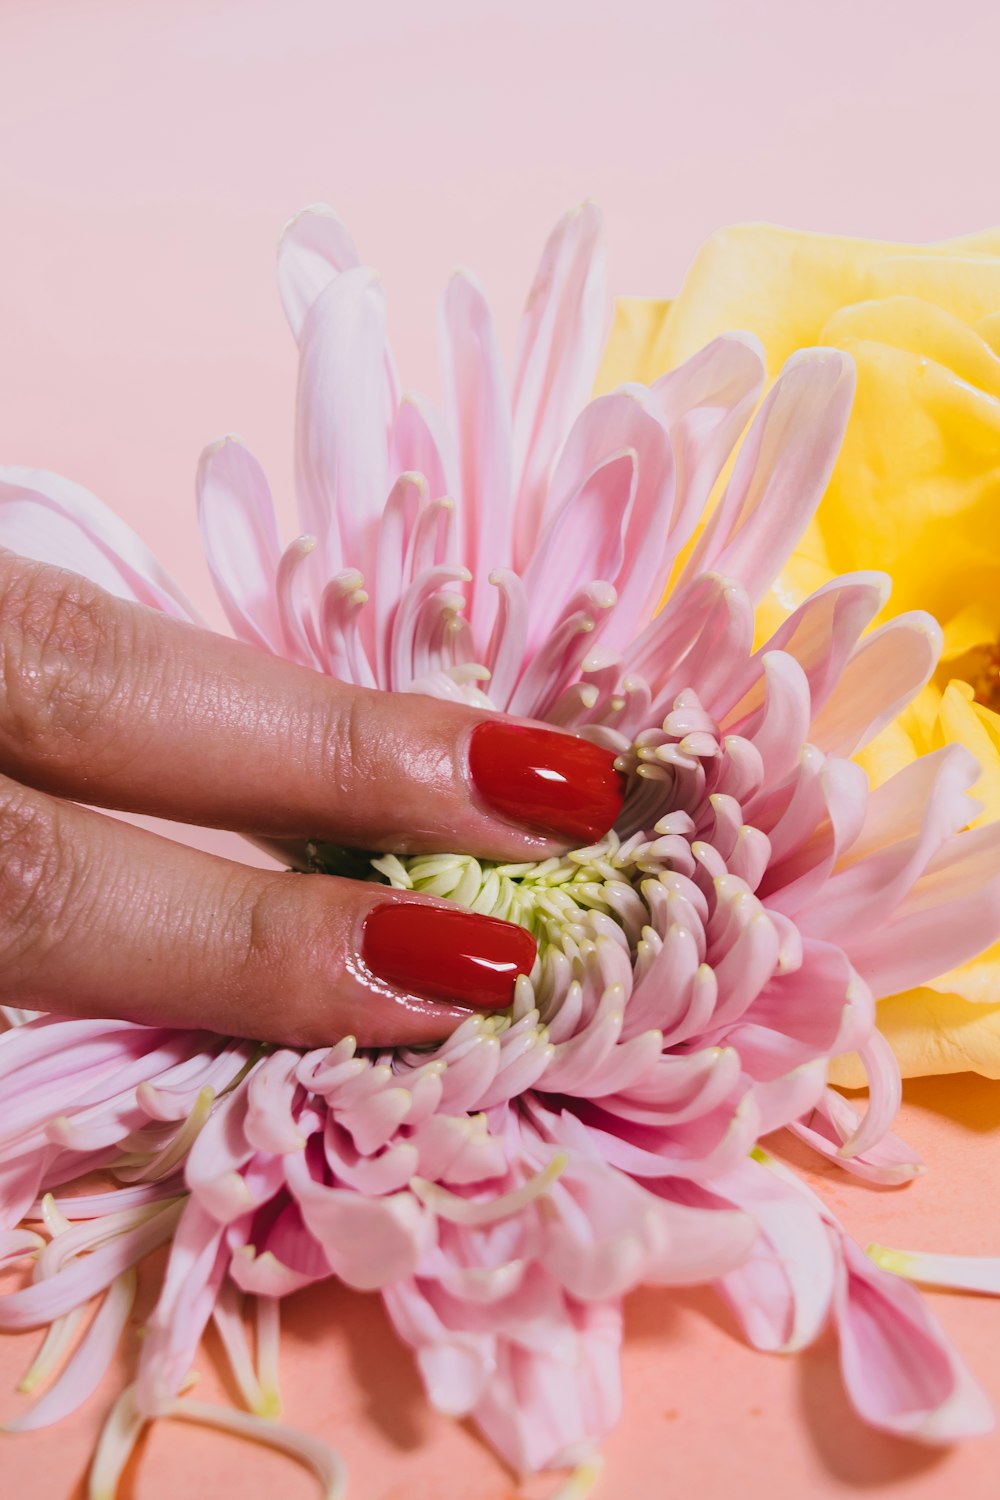 personne pressant une fleur de chrysanthème sur une surface rose